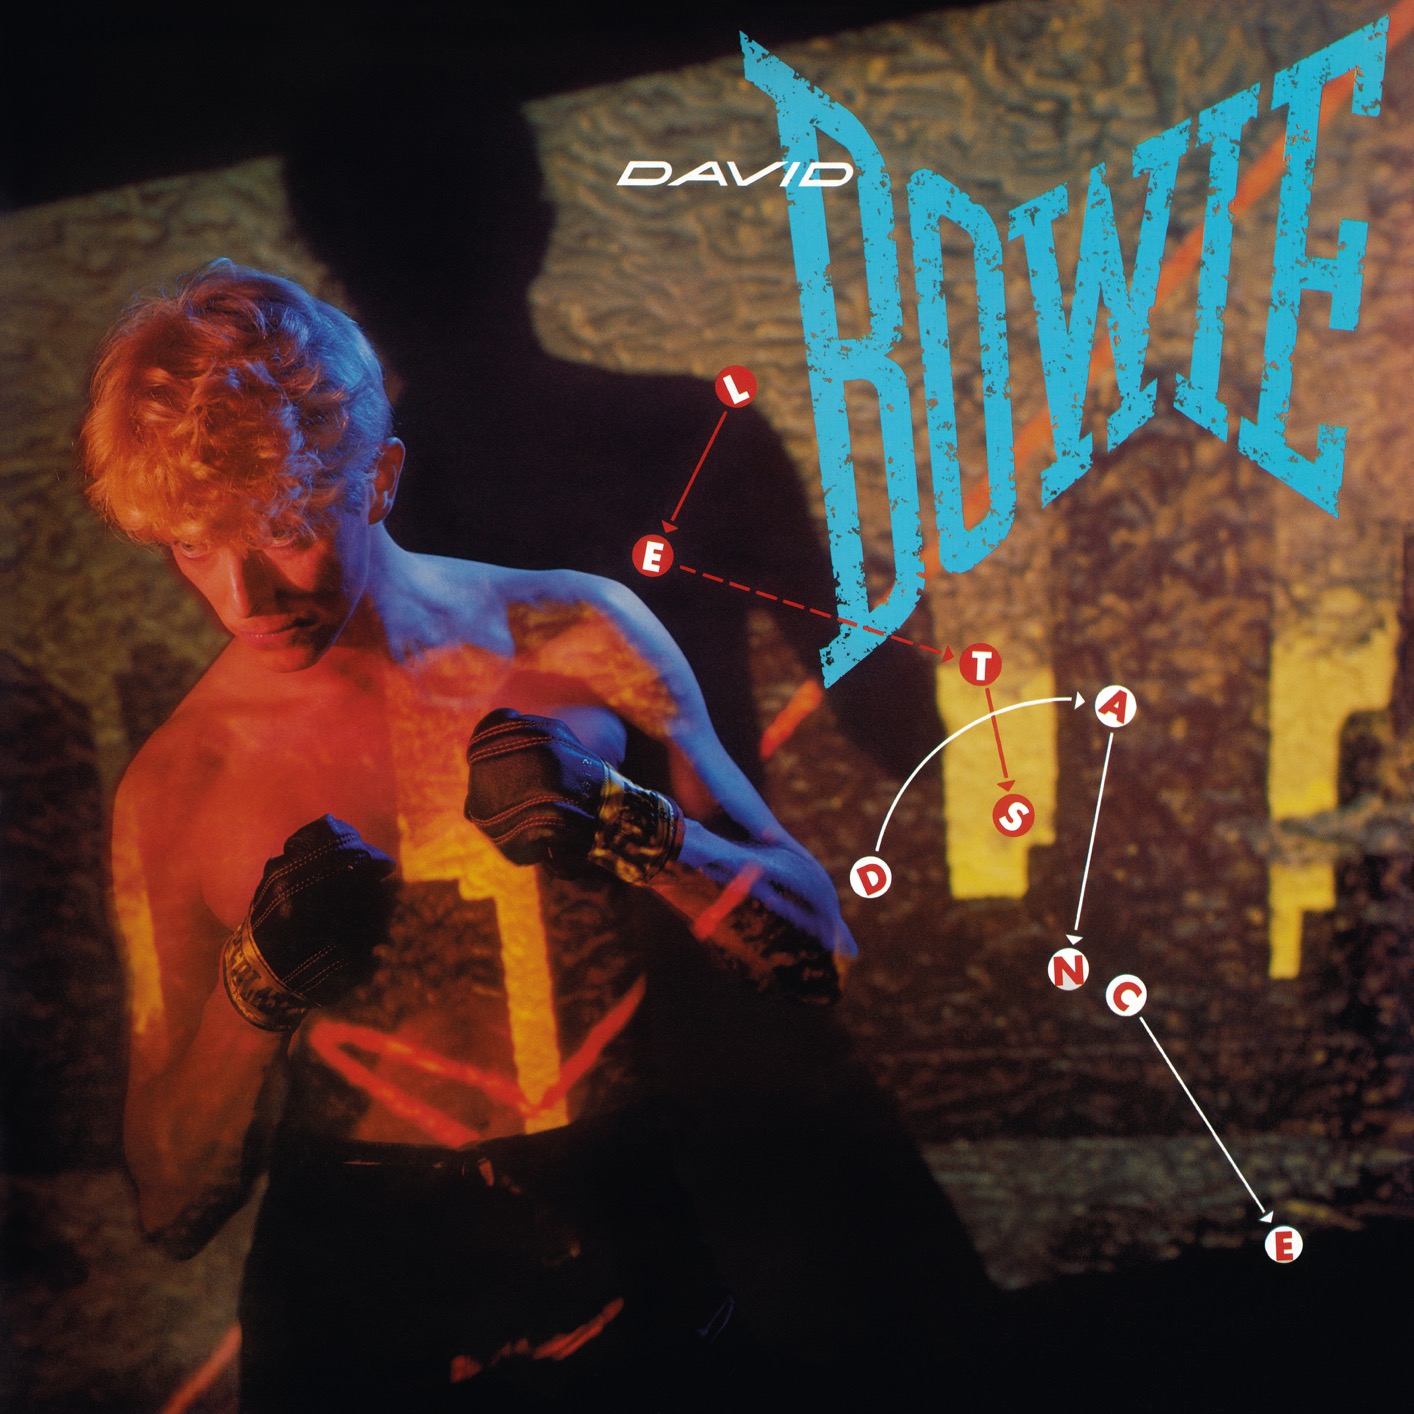 David Bowie - Let’s Dance (2018 Remastered Version) (2019) [FLAC 24bit/96kHz]